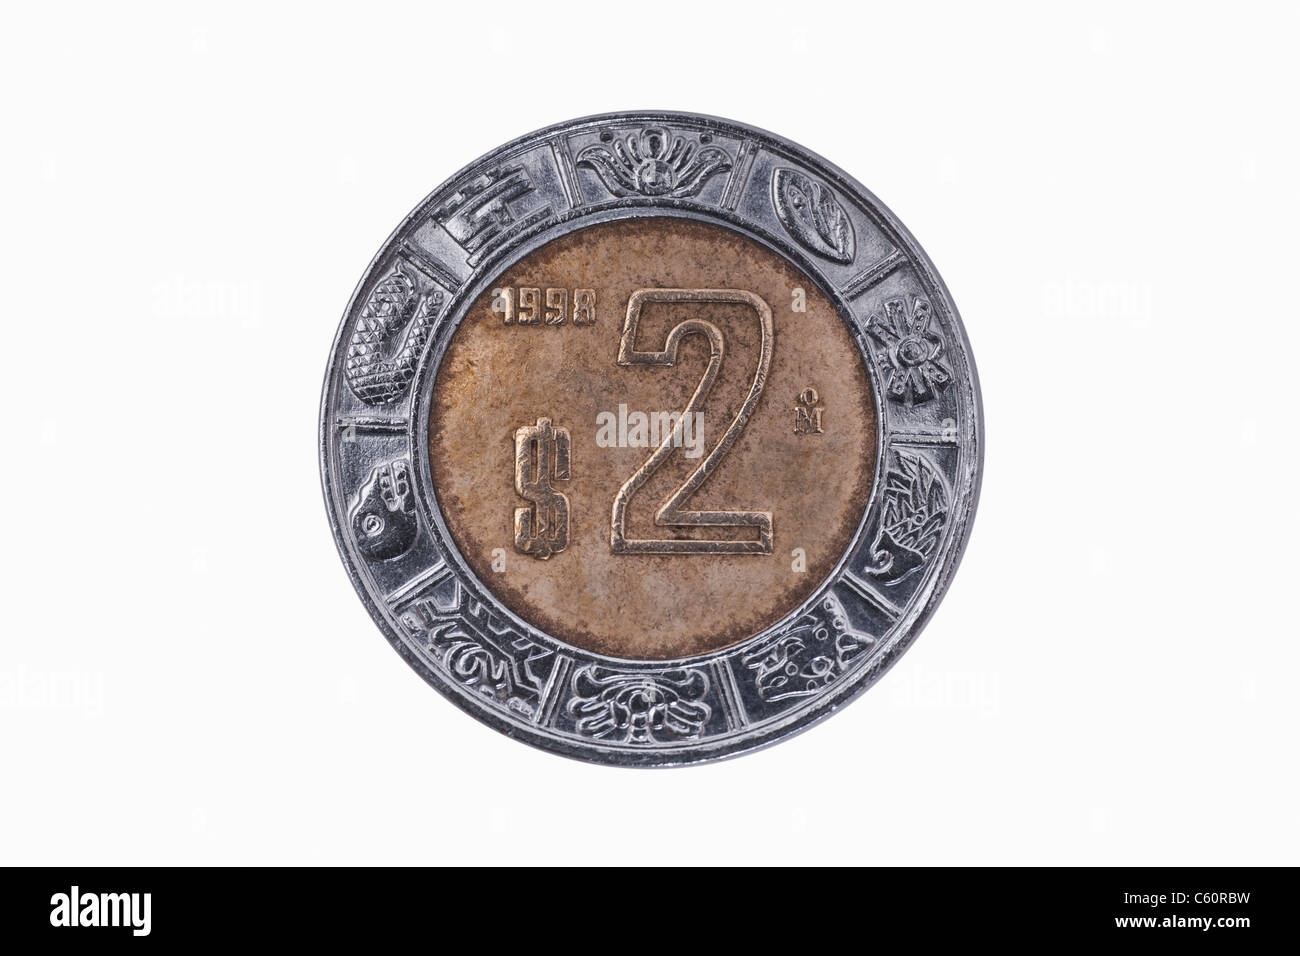 Detailansicht der 2 aus Marokko Peso Münze aus dem Jahr 1998 | photo détail d'un peso 2 coins du Mexique à partir de l'année 1998 Banque D'Images